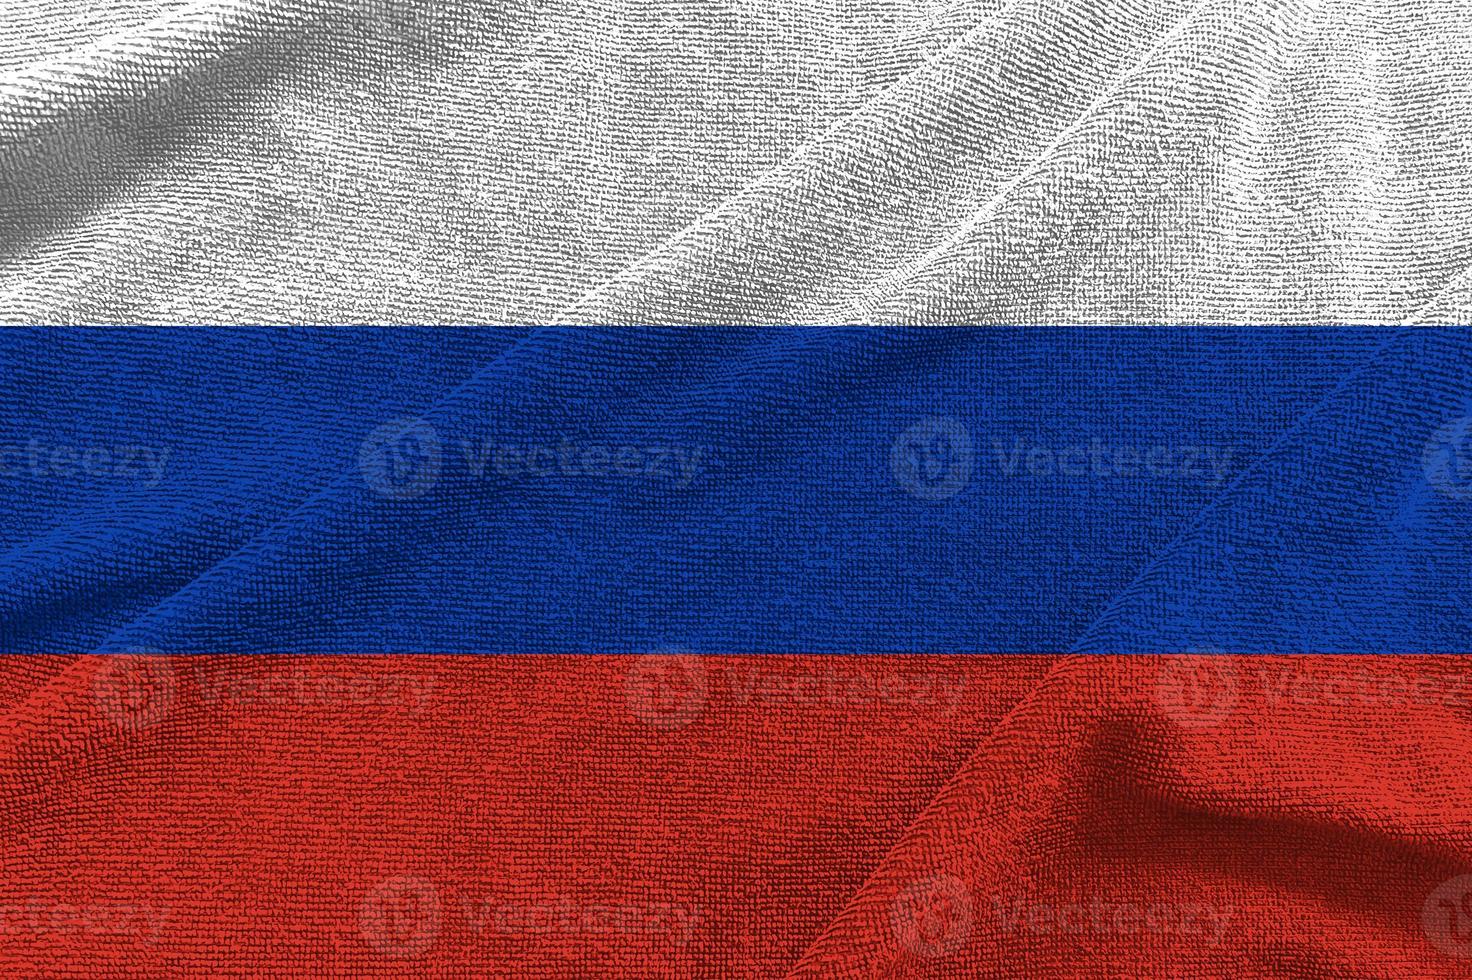 ola de bandera de rusia aislada en png o fondo transparente, símbolos de rusia, plantilla para banner, tarjeta, publicidad, promoción, comercial de televisión, anuncios, diseño web, ilustración foto